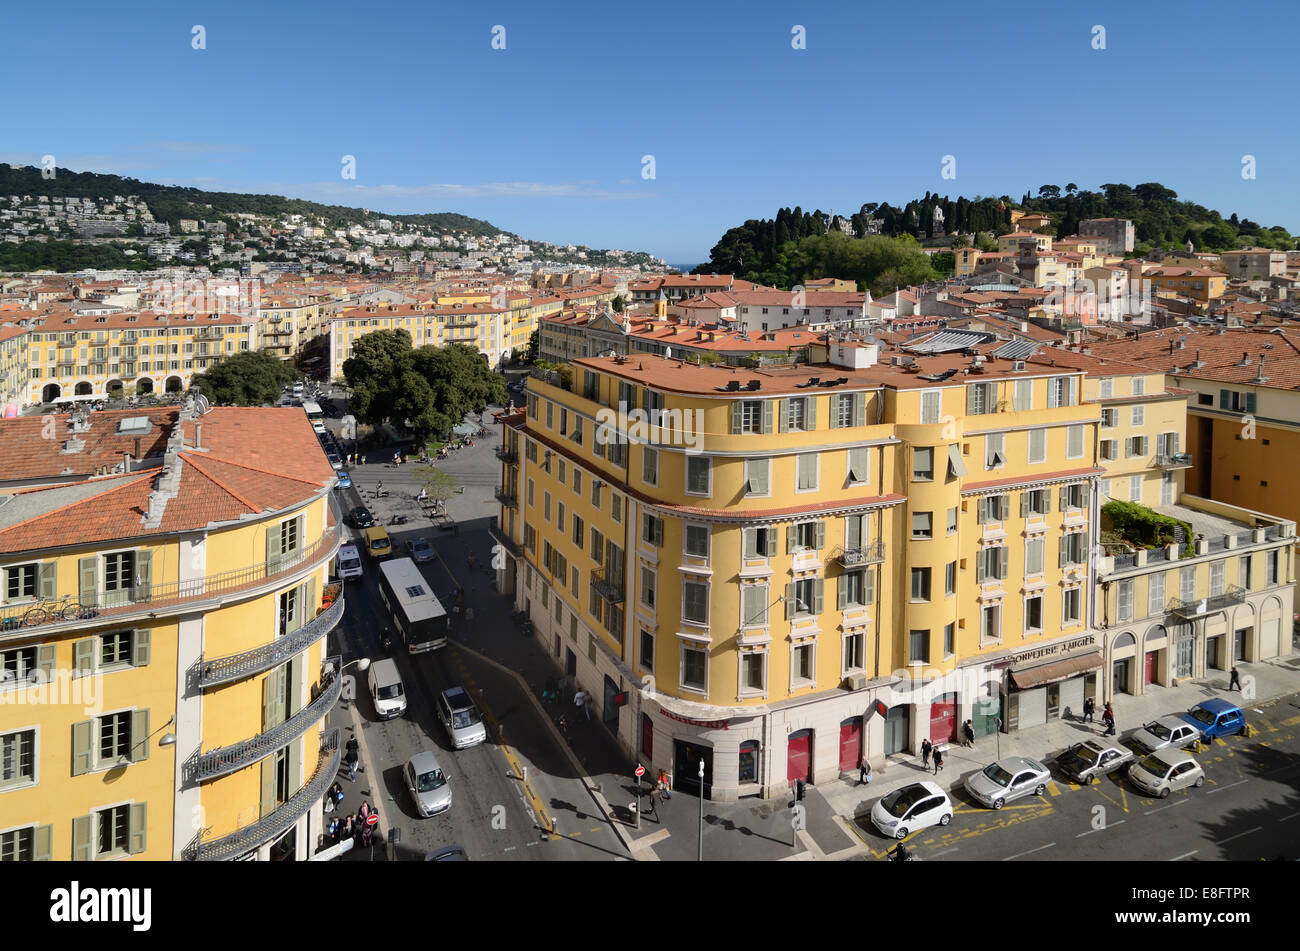 Vue panoramique de la vieille ville avec la Place Garibaldi ou Place Garibaldi et du château médiéval NICE Alpes-Maritimes France Banque D'Images